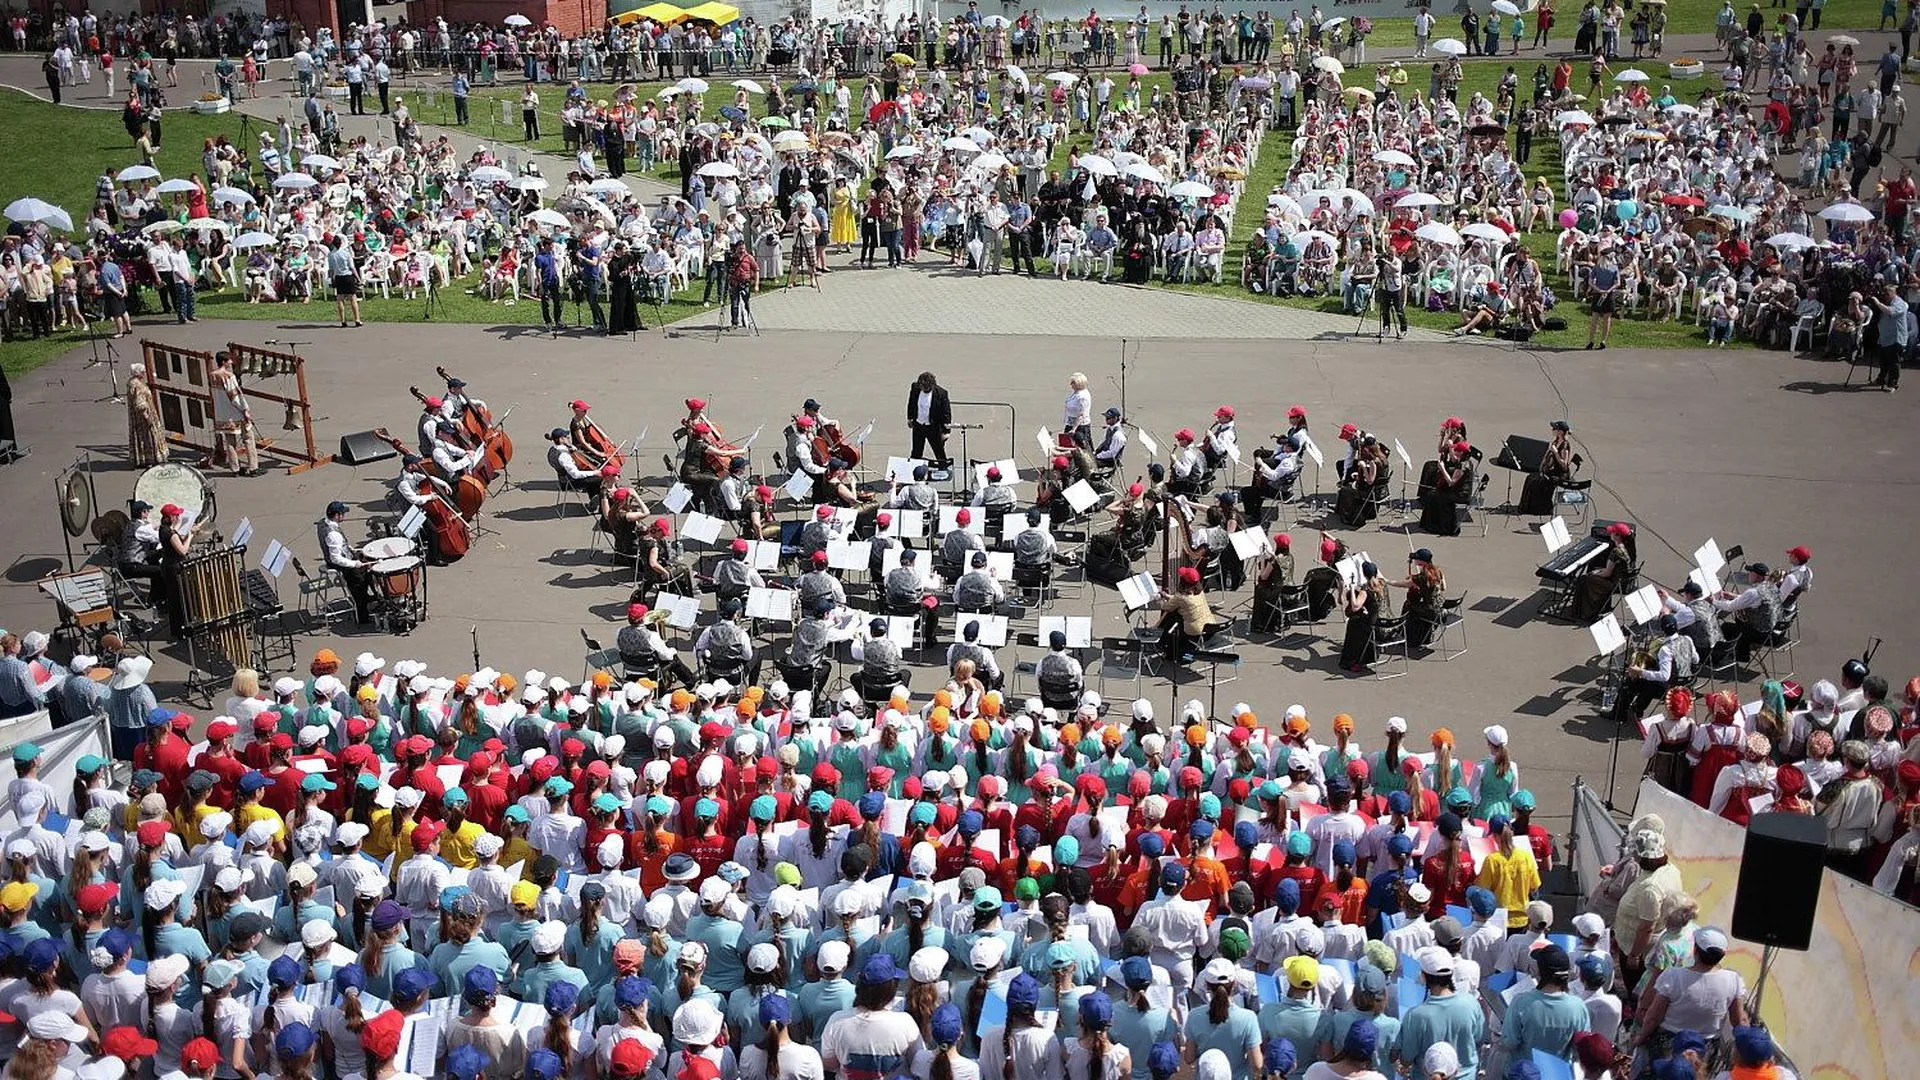 Сводный детский хор области в составе 1 тыс человек выступит в Коломне 24 мая